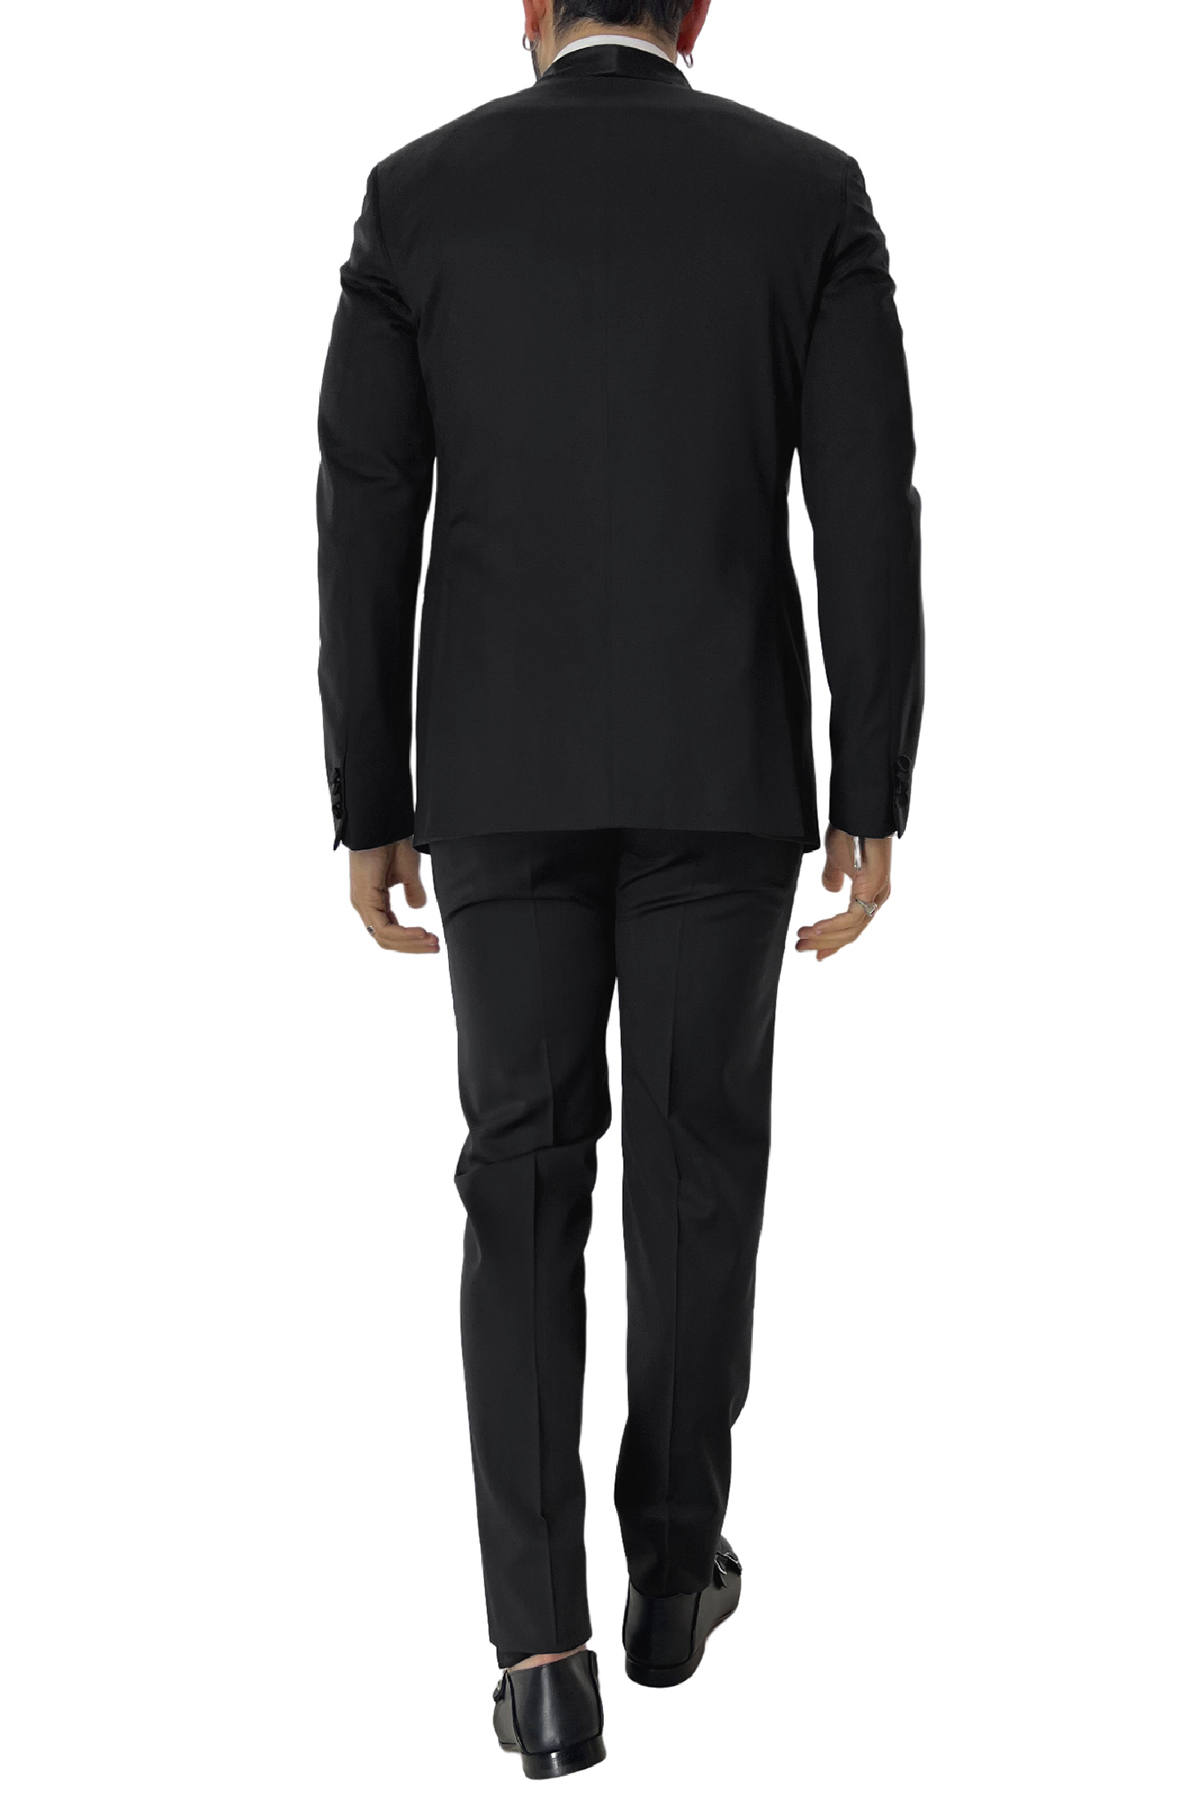 Smoking uomo nero giacca con rever sciallato e pantalone tasca america in fresco lana 100% Vitale Barberis Canonico